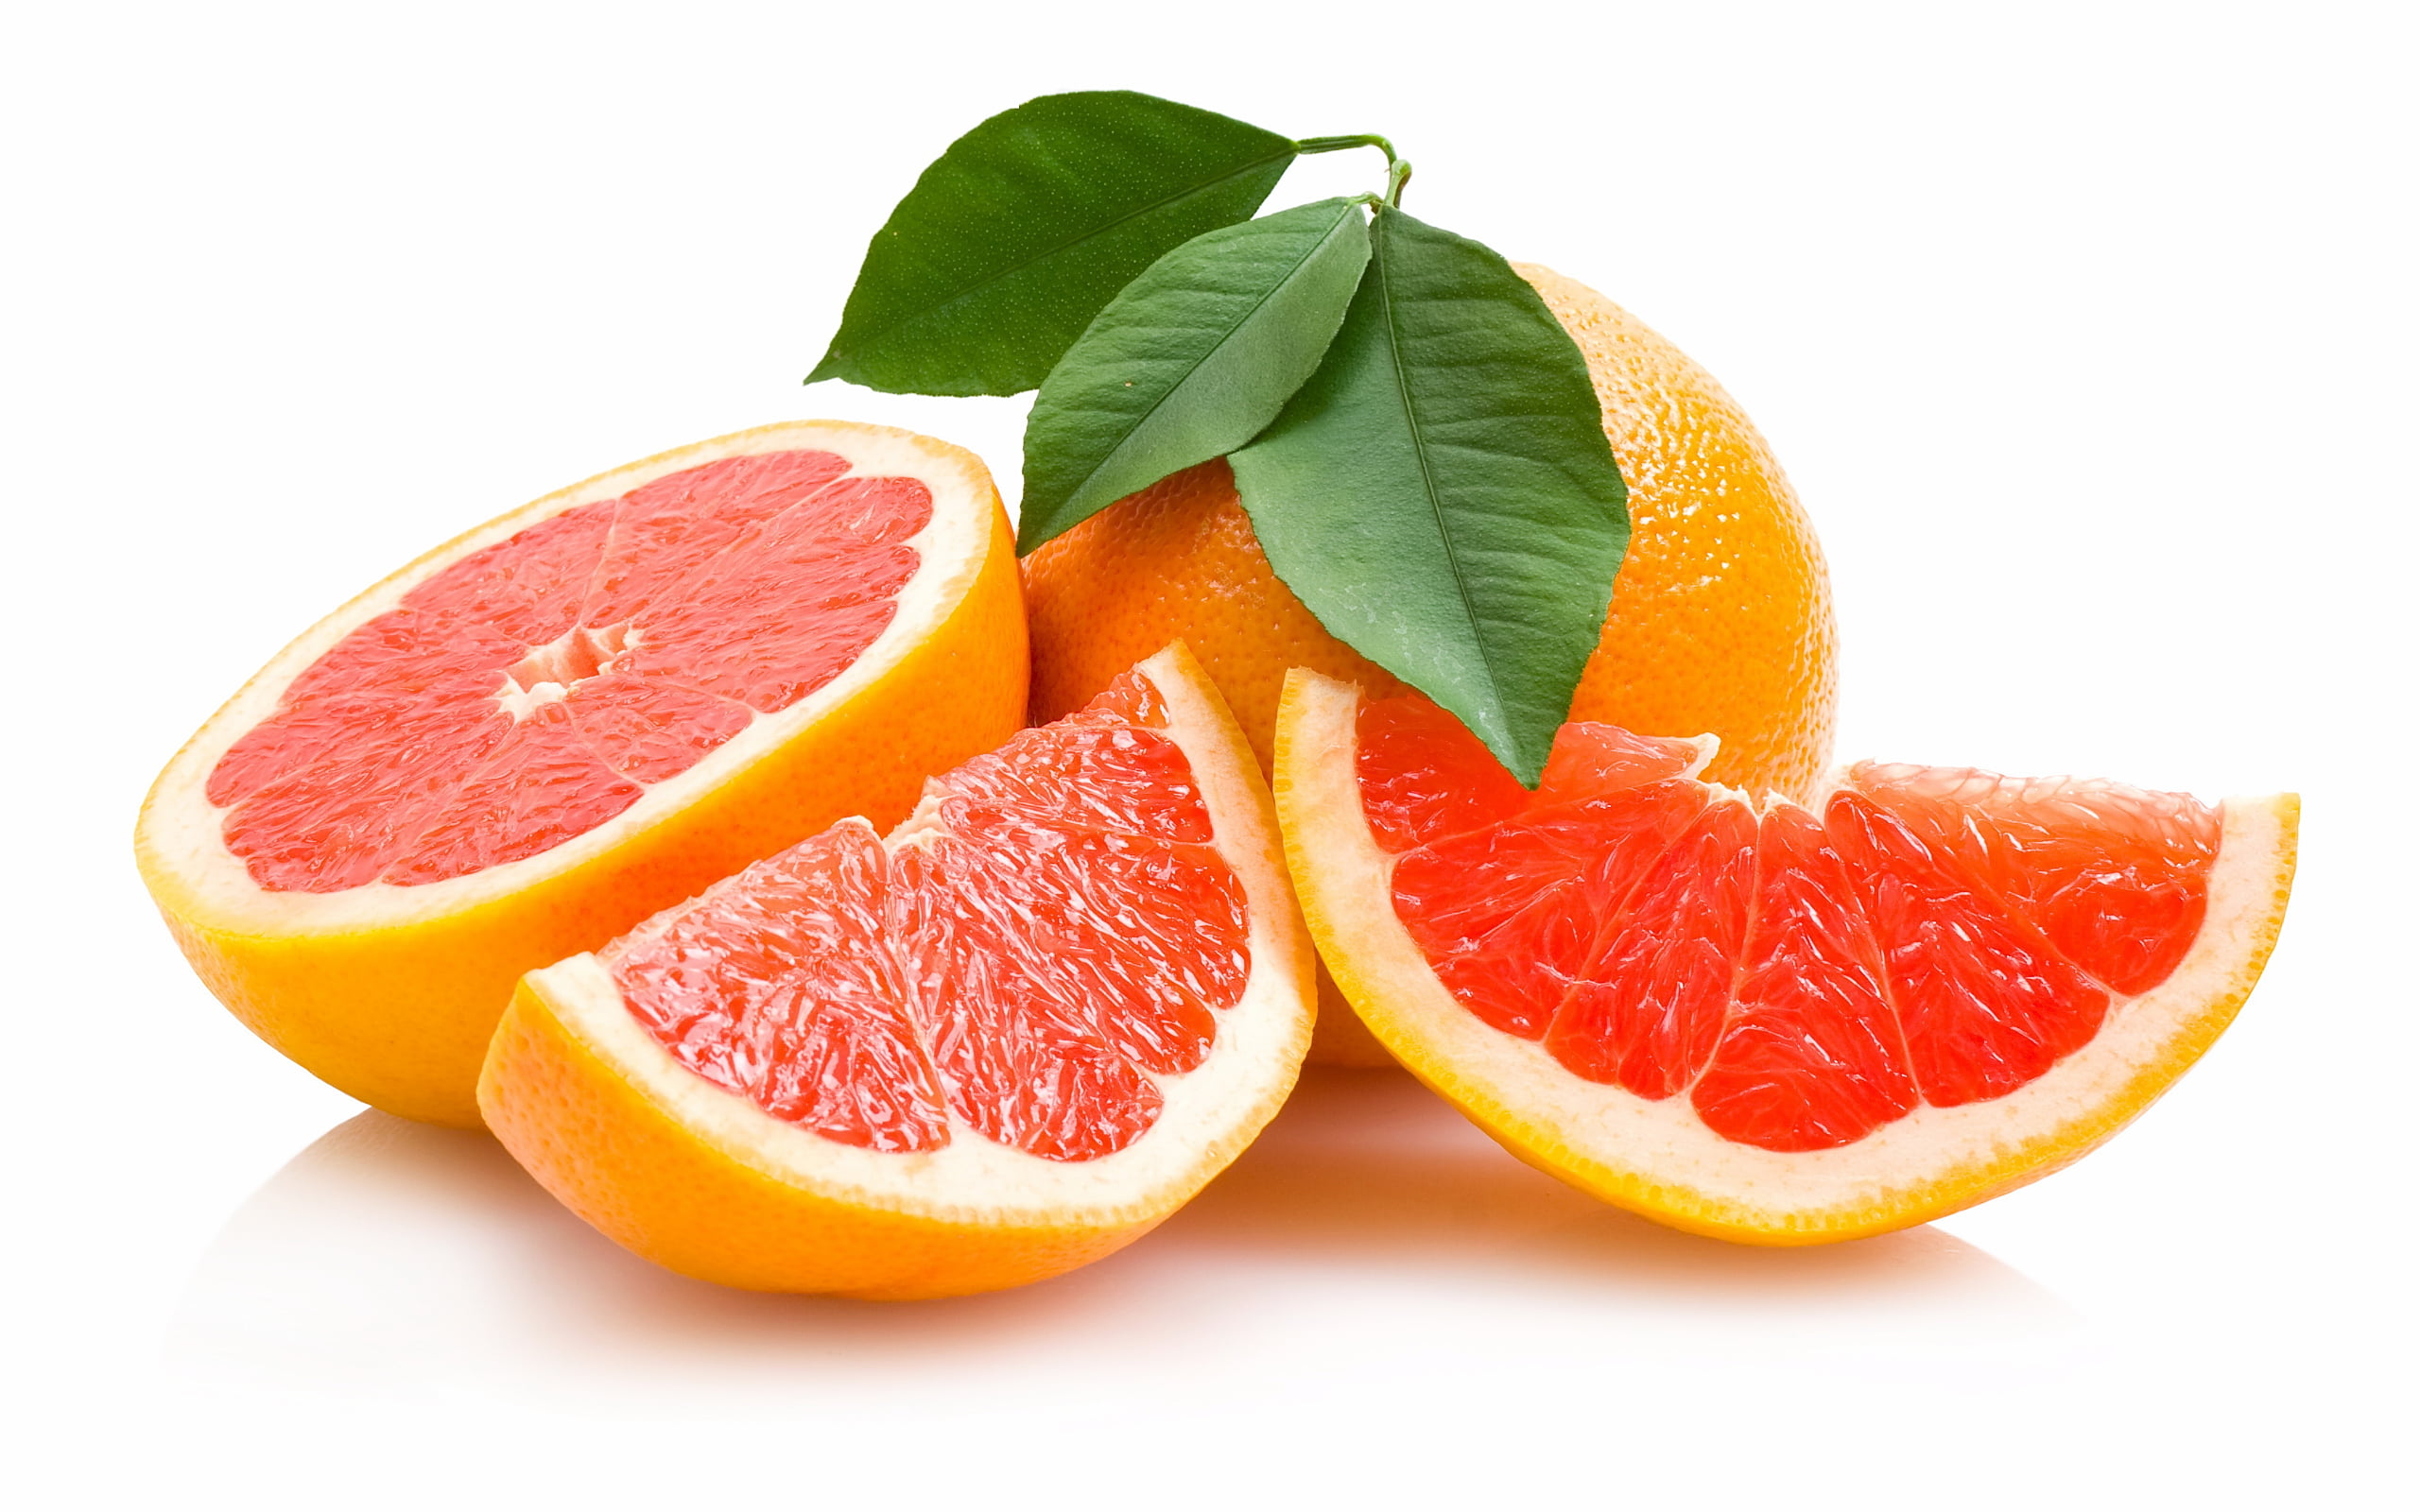 orange fruit with slices, Wall, Food, freshness, citrus Fruit